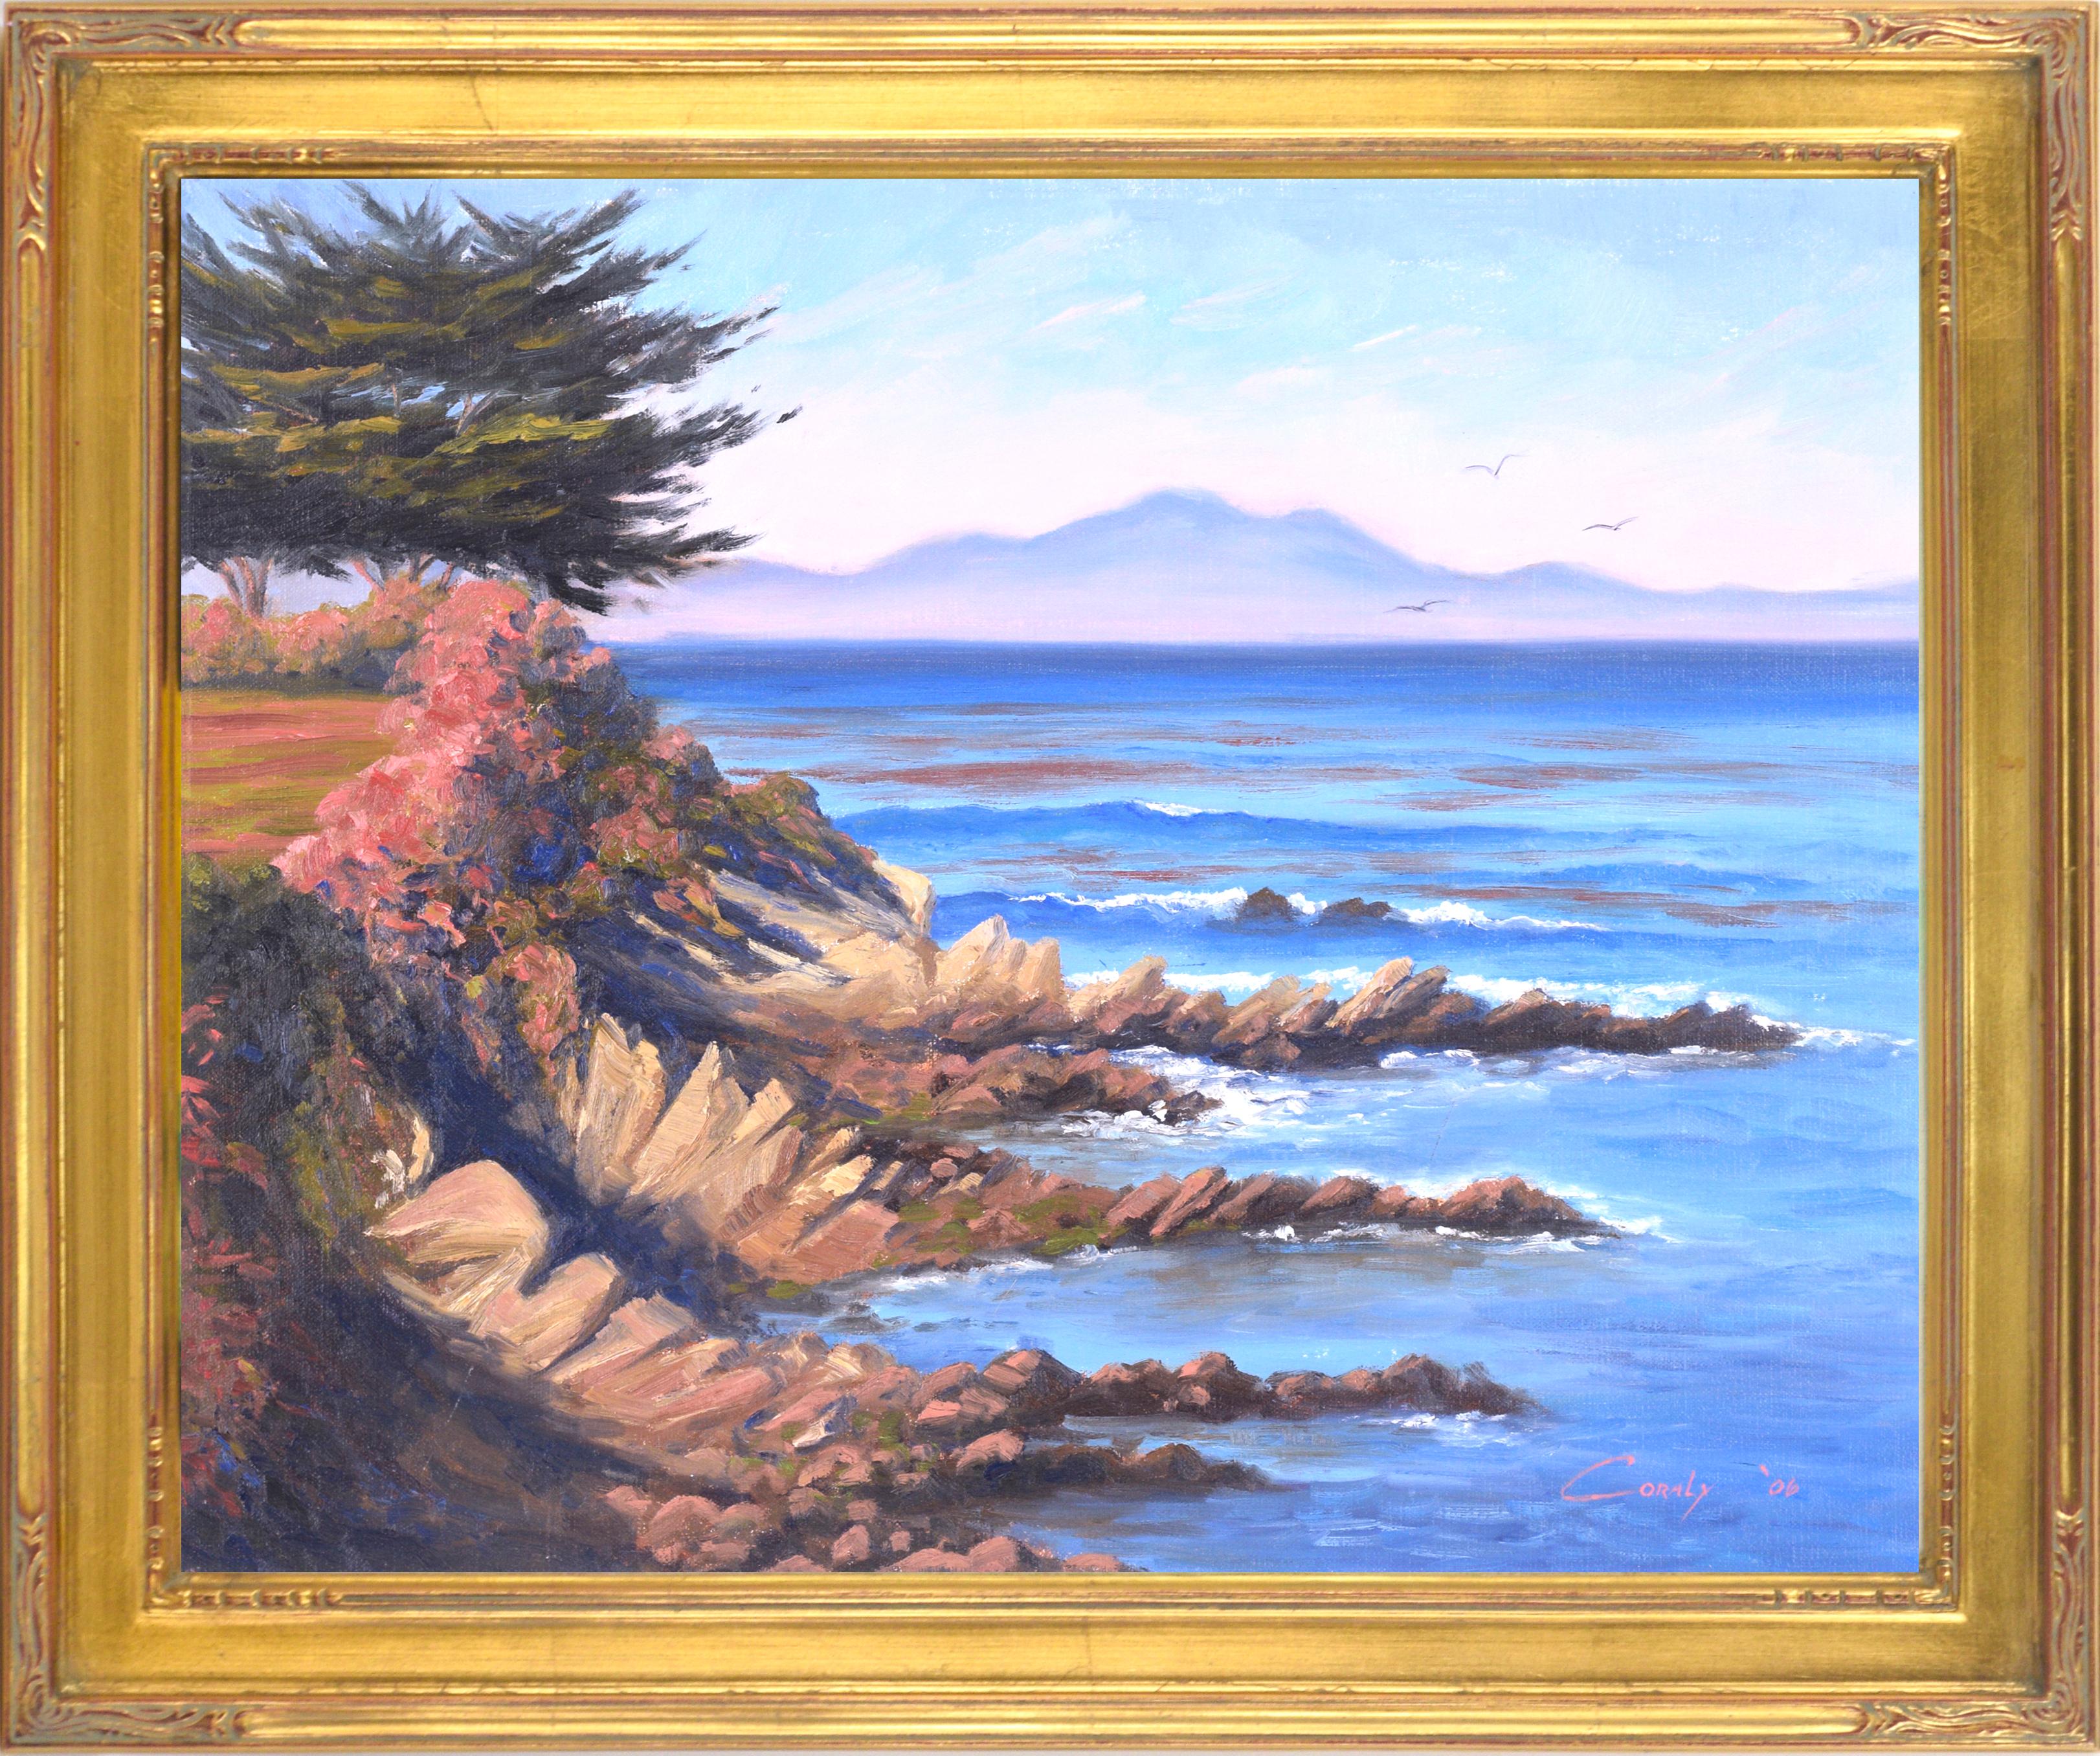 "Gloria de Pacific Grove" - Paisaje marino rocoso